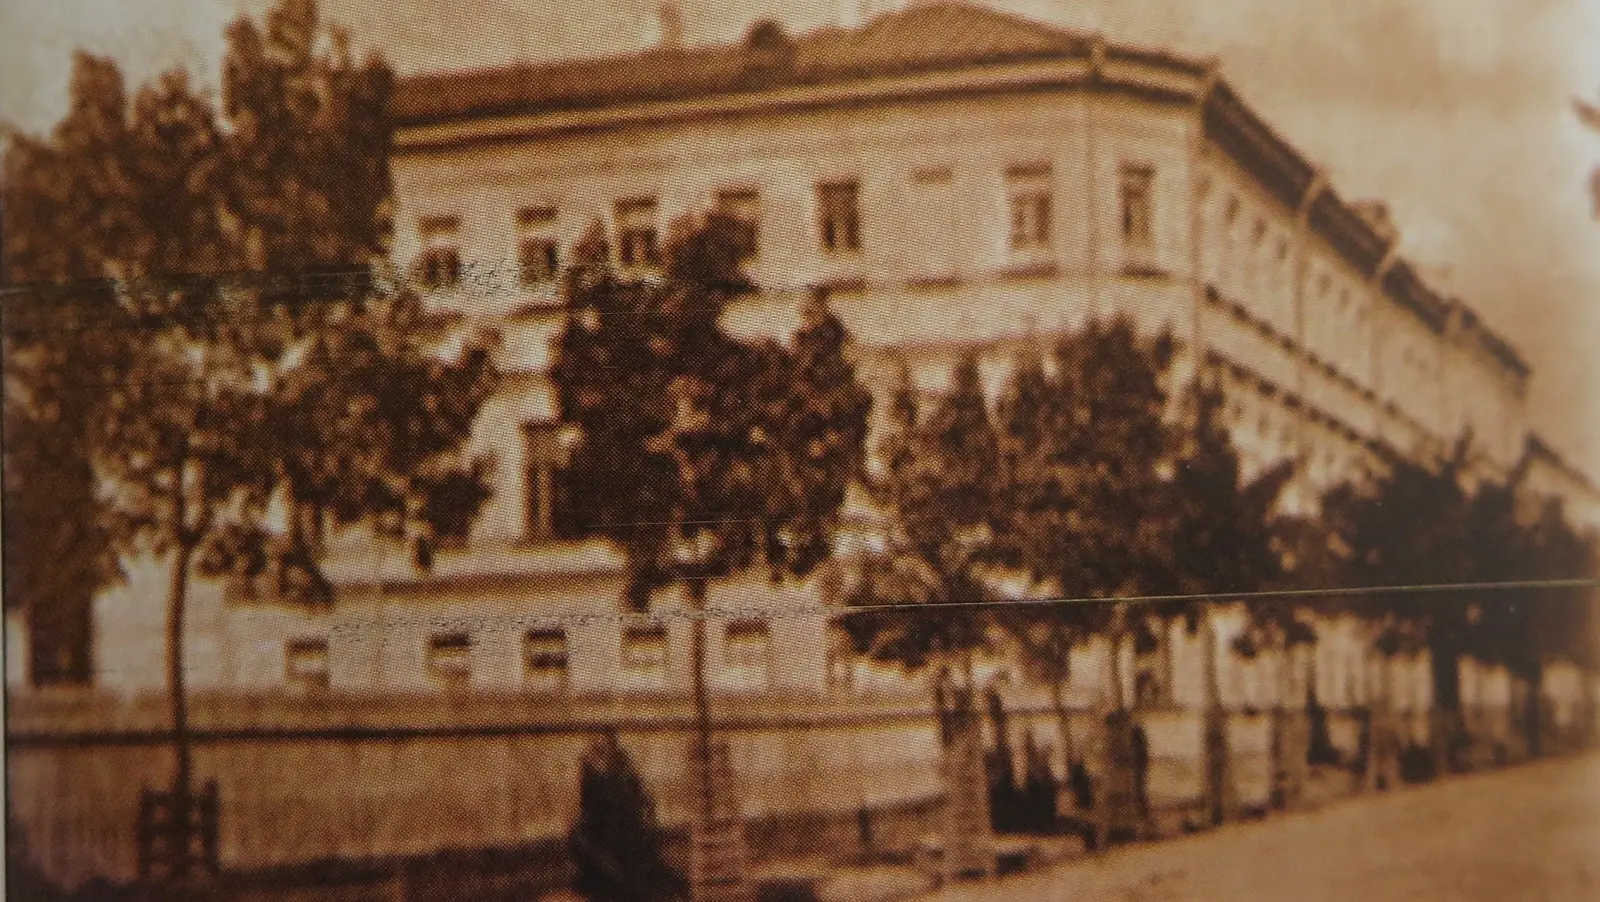 А так выглядела средняя школа №1 в середине XX века. Фото из книги «Очерки истории образования Могилевщины».